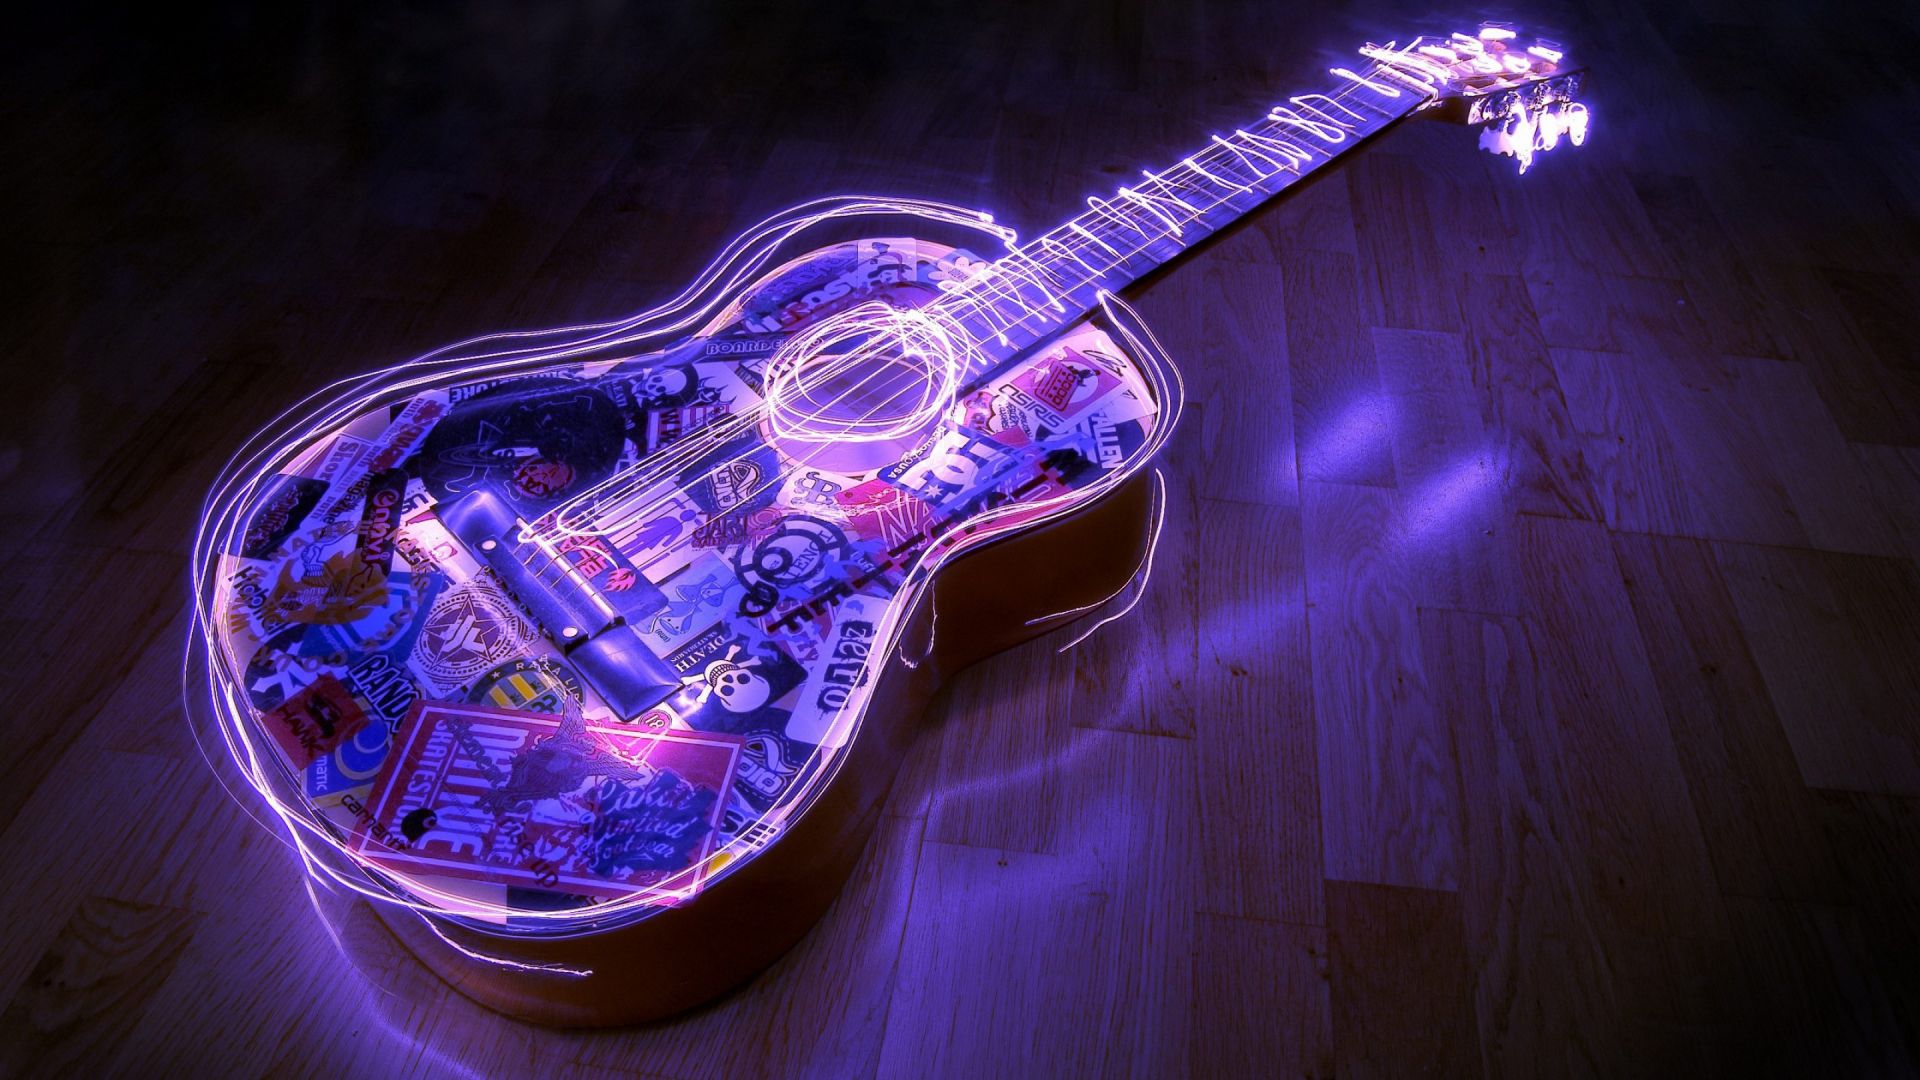 Wallpaper Custom design on guitar